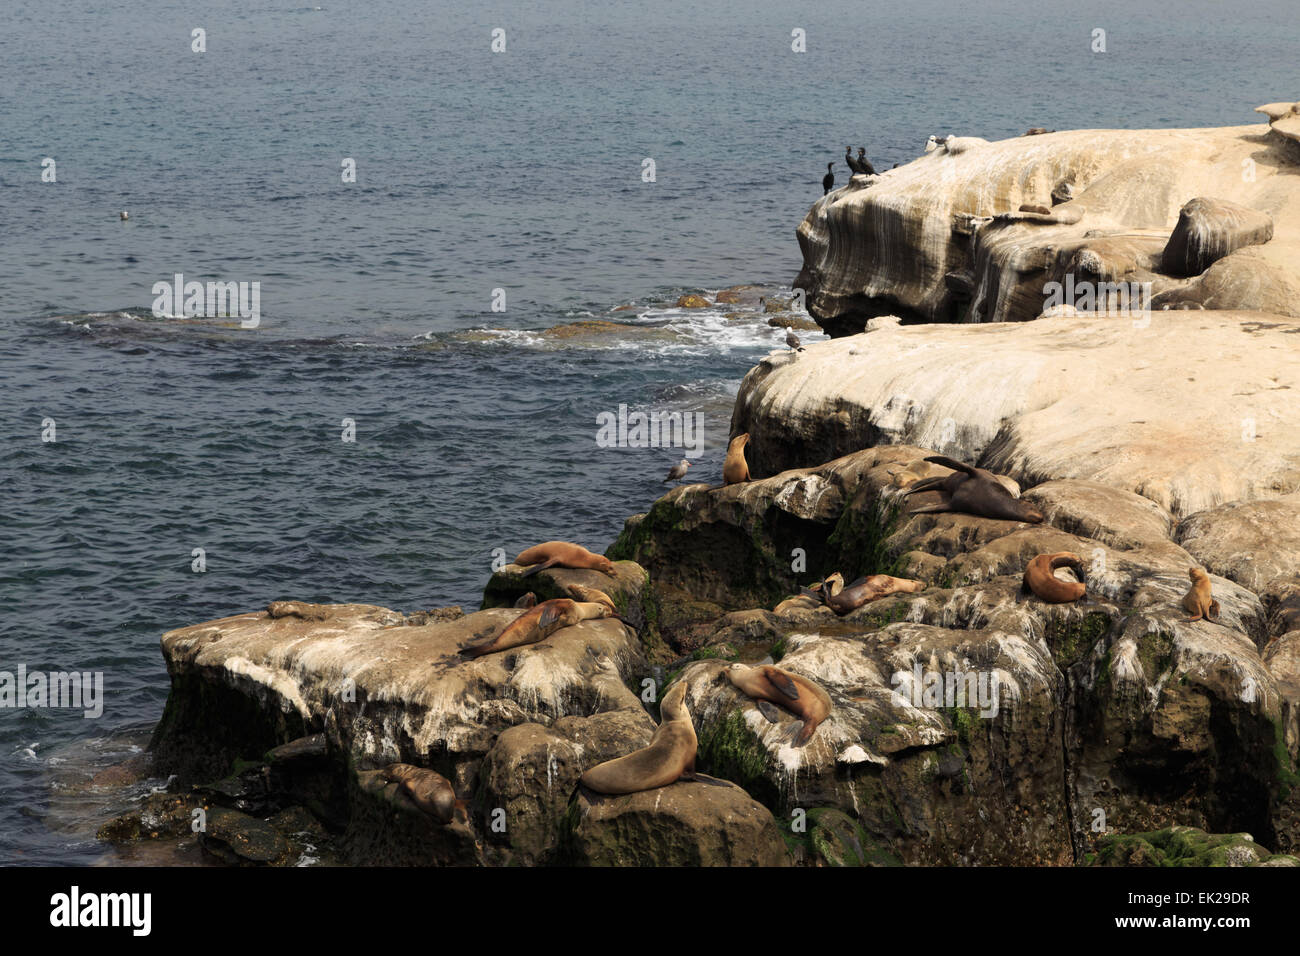 Una fotografia di alcuni leoni di mare a La Jolla Cove, San Diego. La Jolla Cove è una piccola e pittoresca baia e la spiaggia. Foto Stock